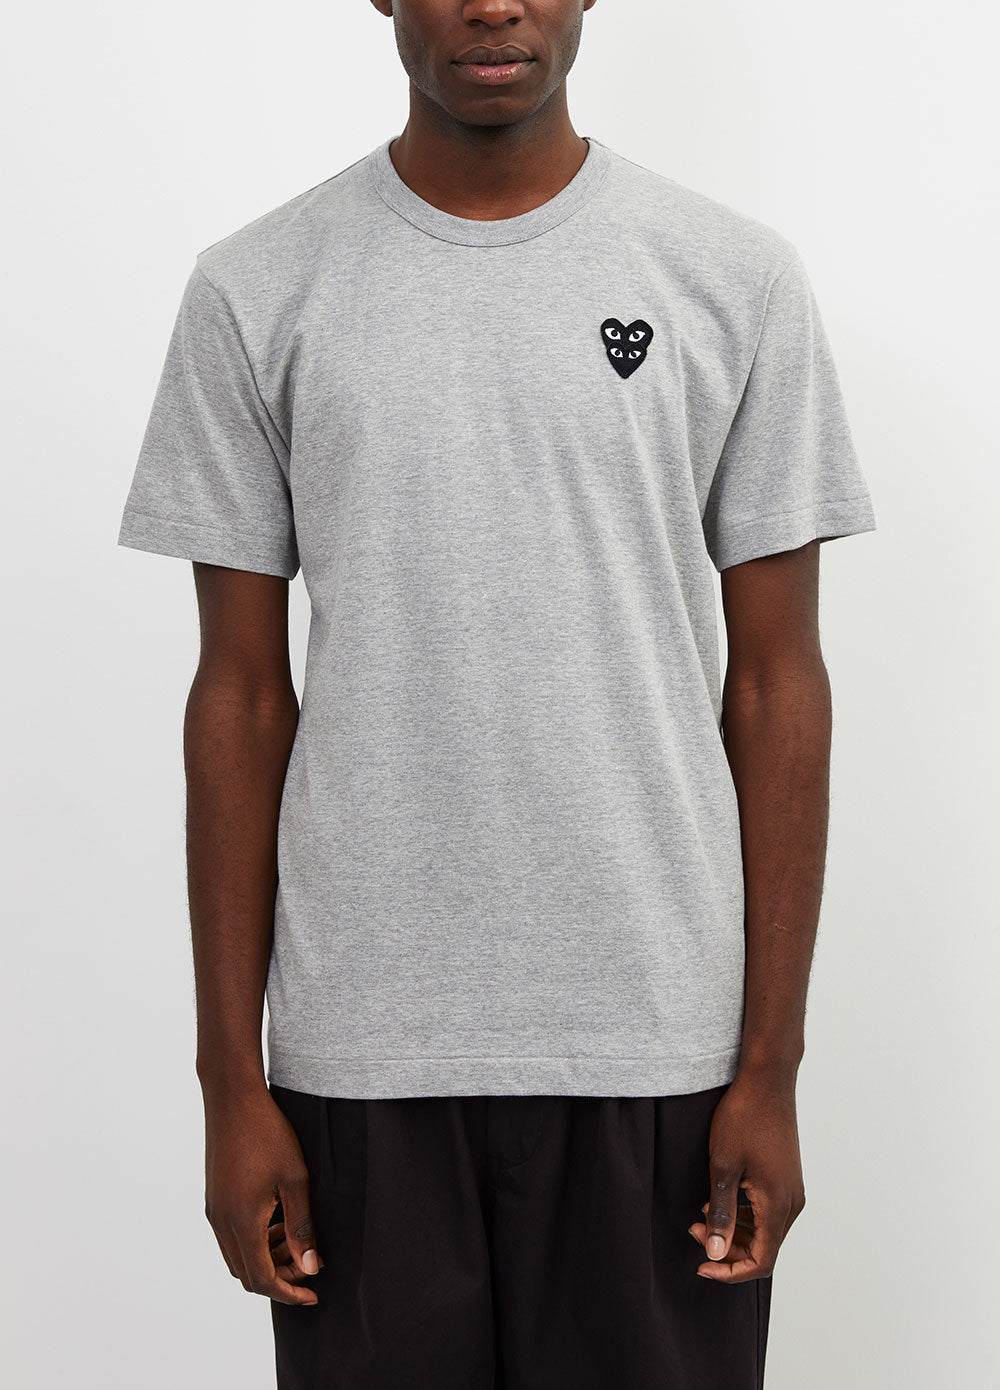 T296 Layered Heart T-shirt